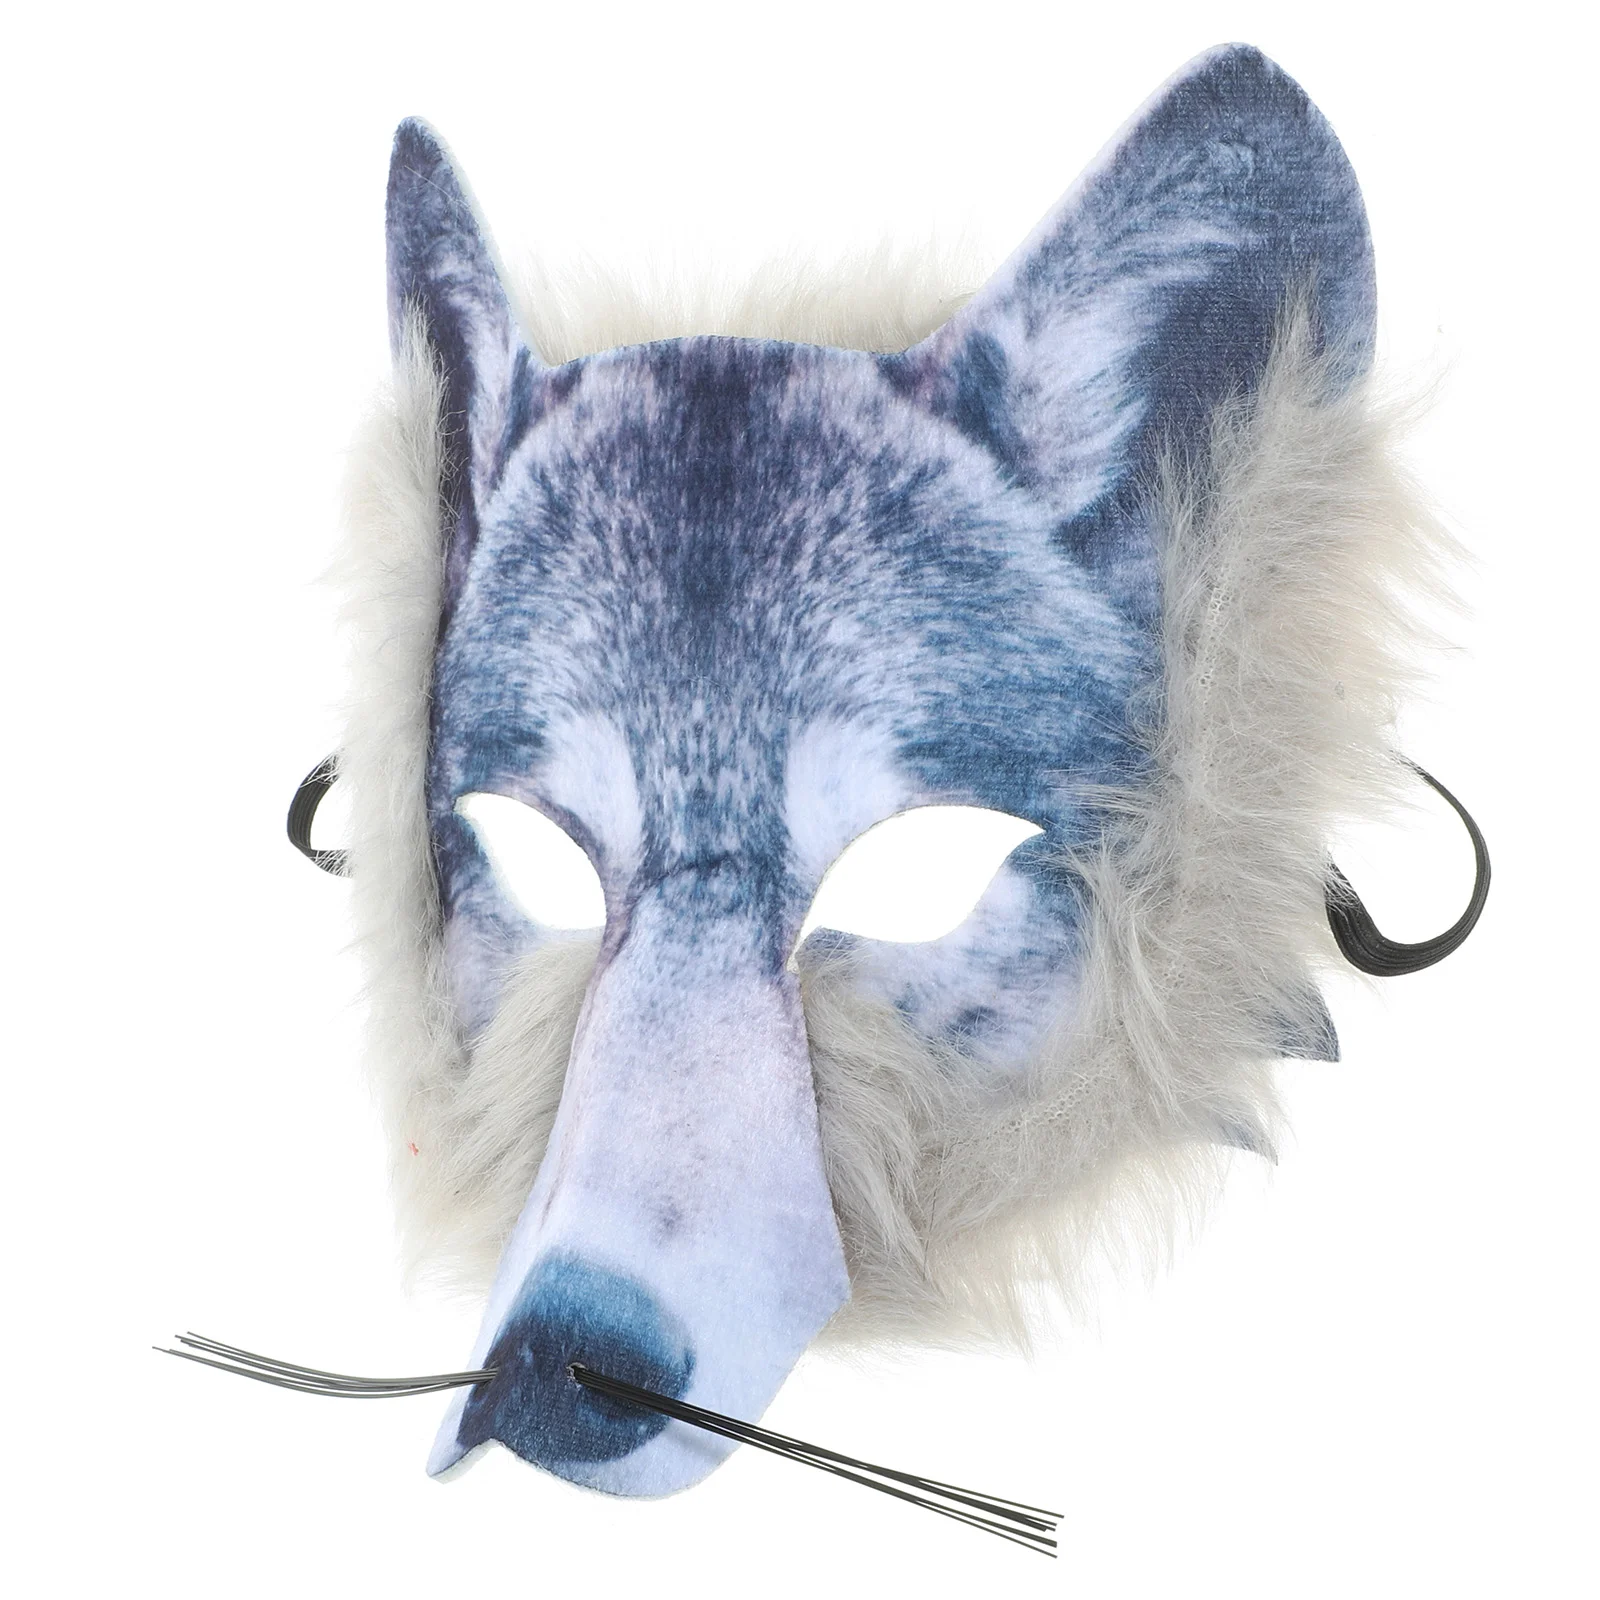 

Маска для маскарада косплея Хэллоуина из нетканого материала с изображением животных волка